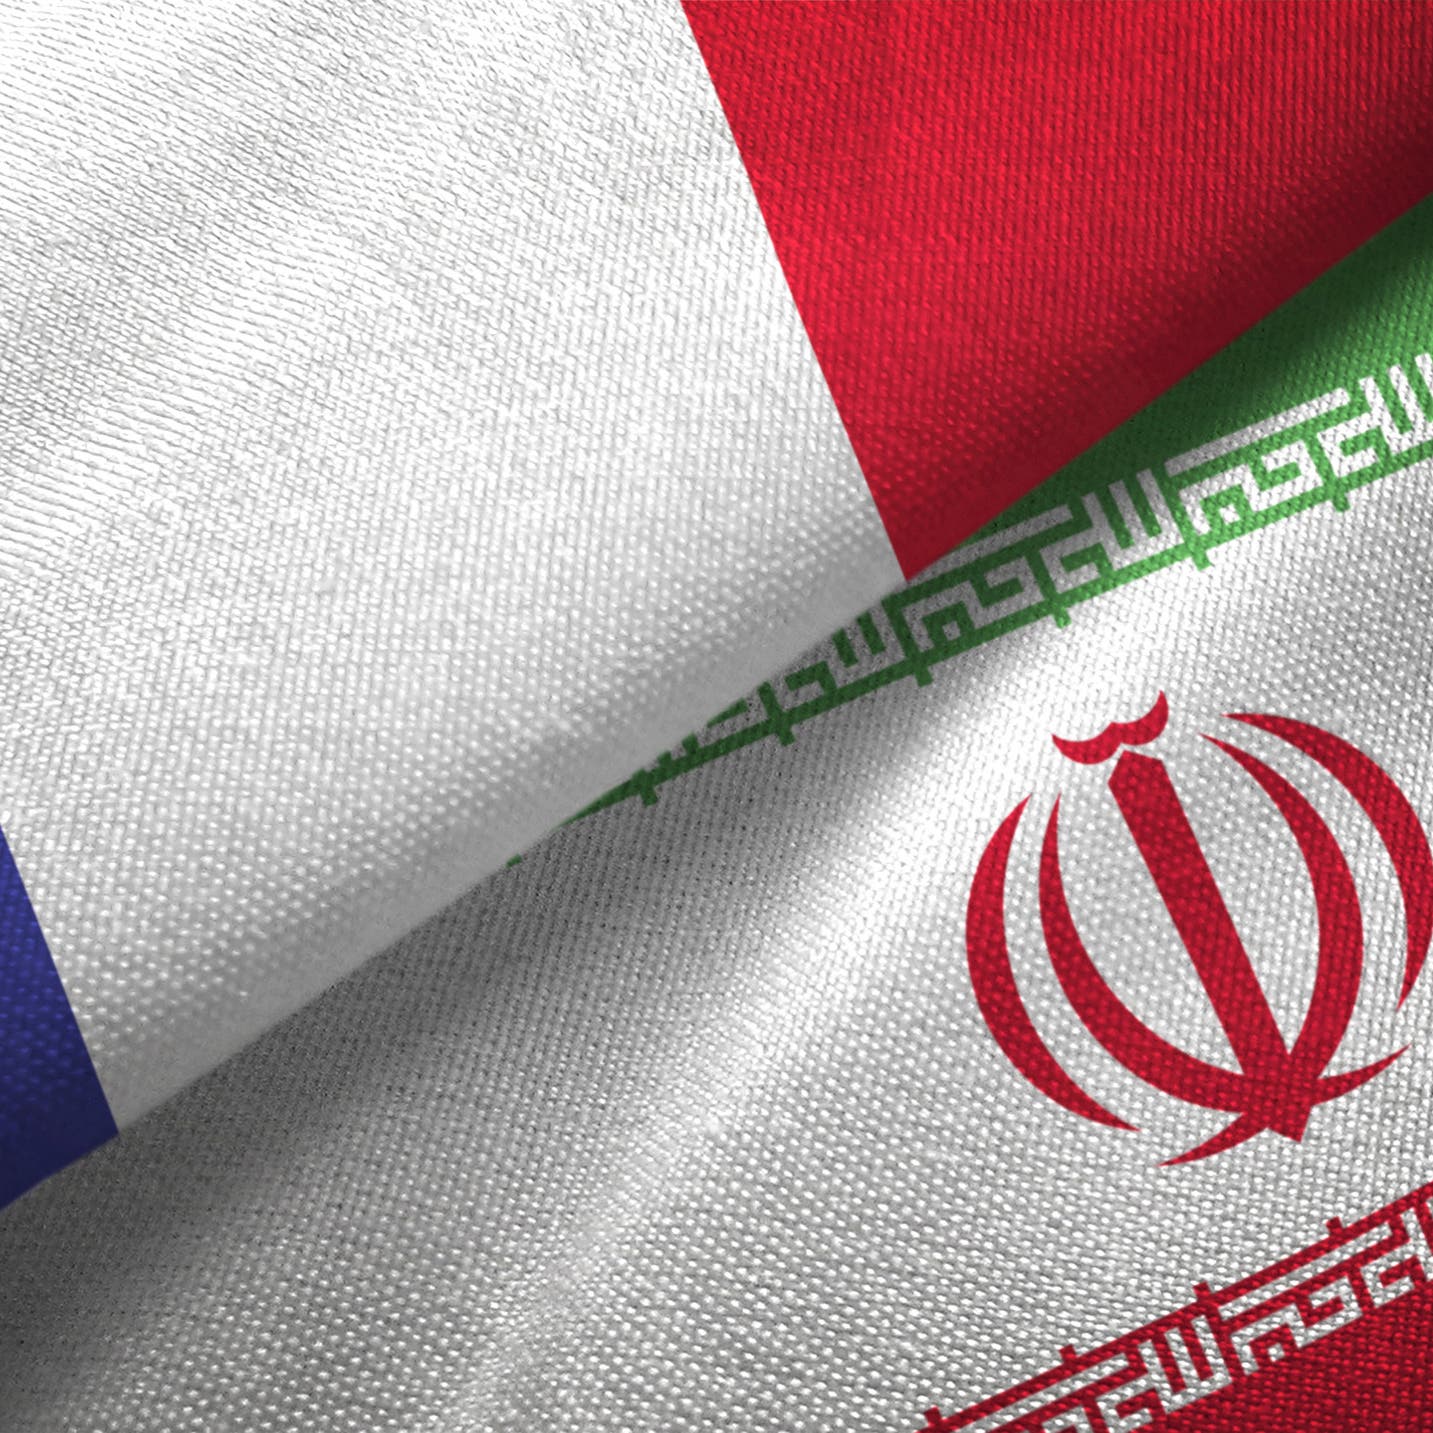 فرنسا: تقرير وكالة الطاقة الذرية بشأن إيران مقلق للغاية